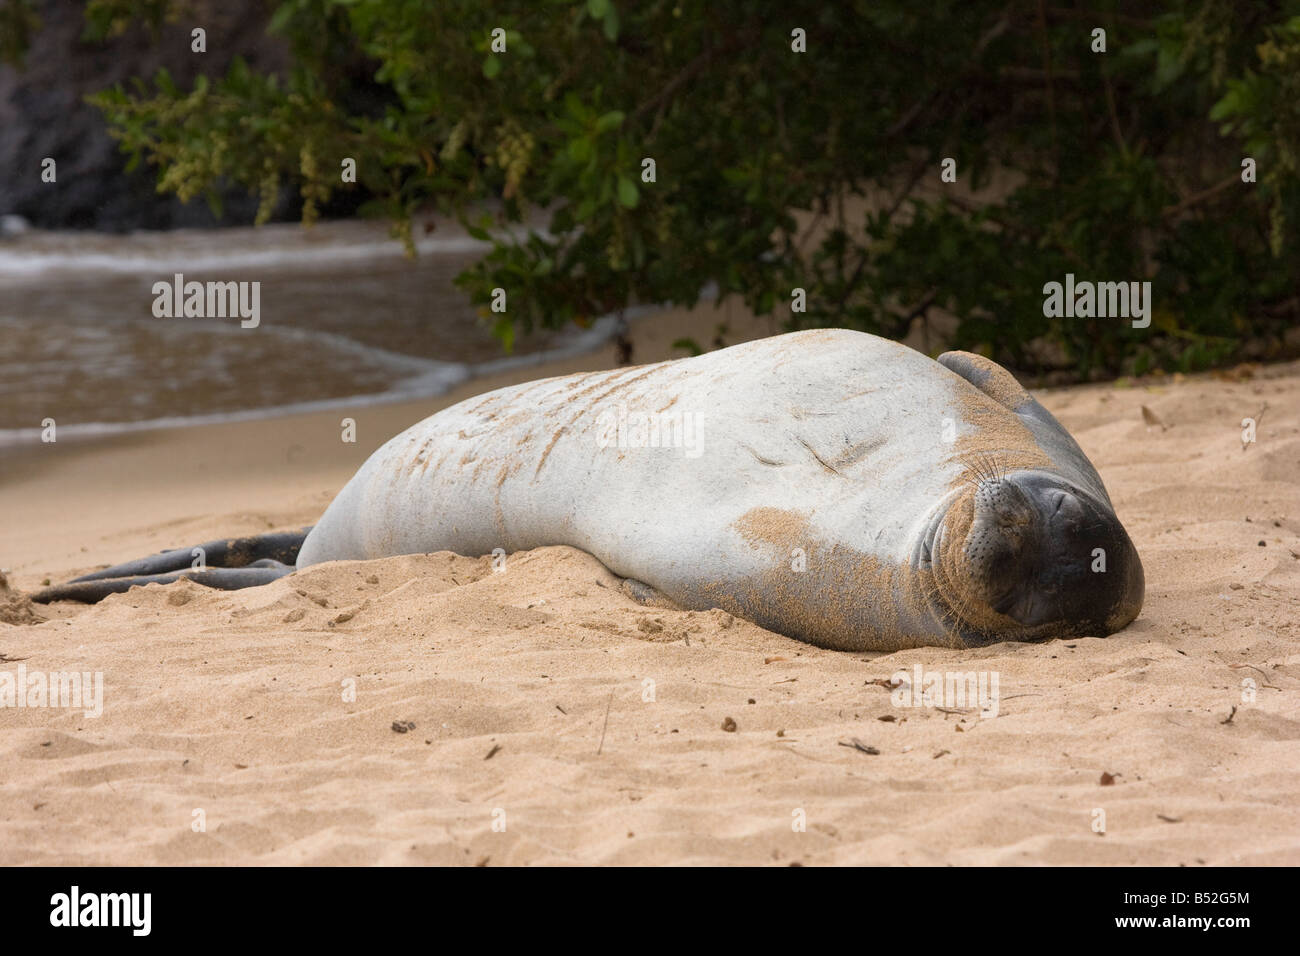 Un phoque moine Hawaiien, Monachus schauinslandi, endémiques et menacées, repose dans le sable dans la Baie de Kapalua, Hawaii. Banque D'Images